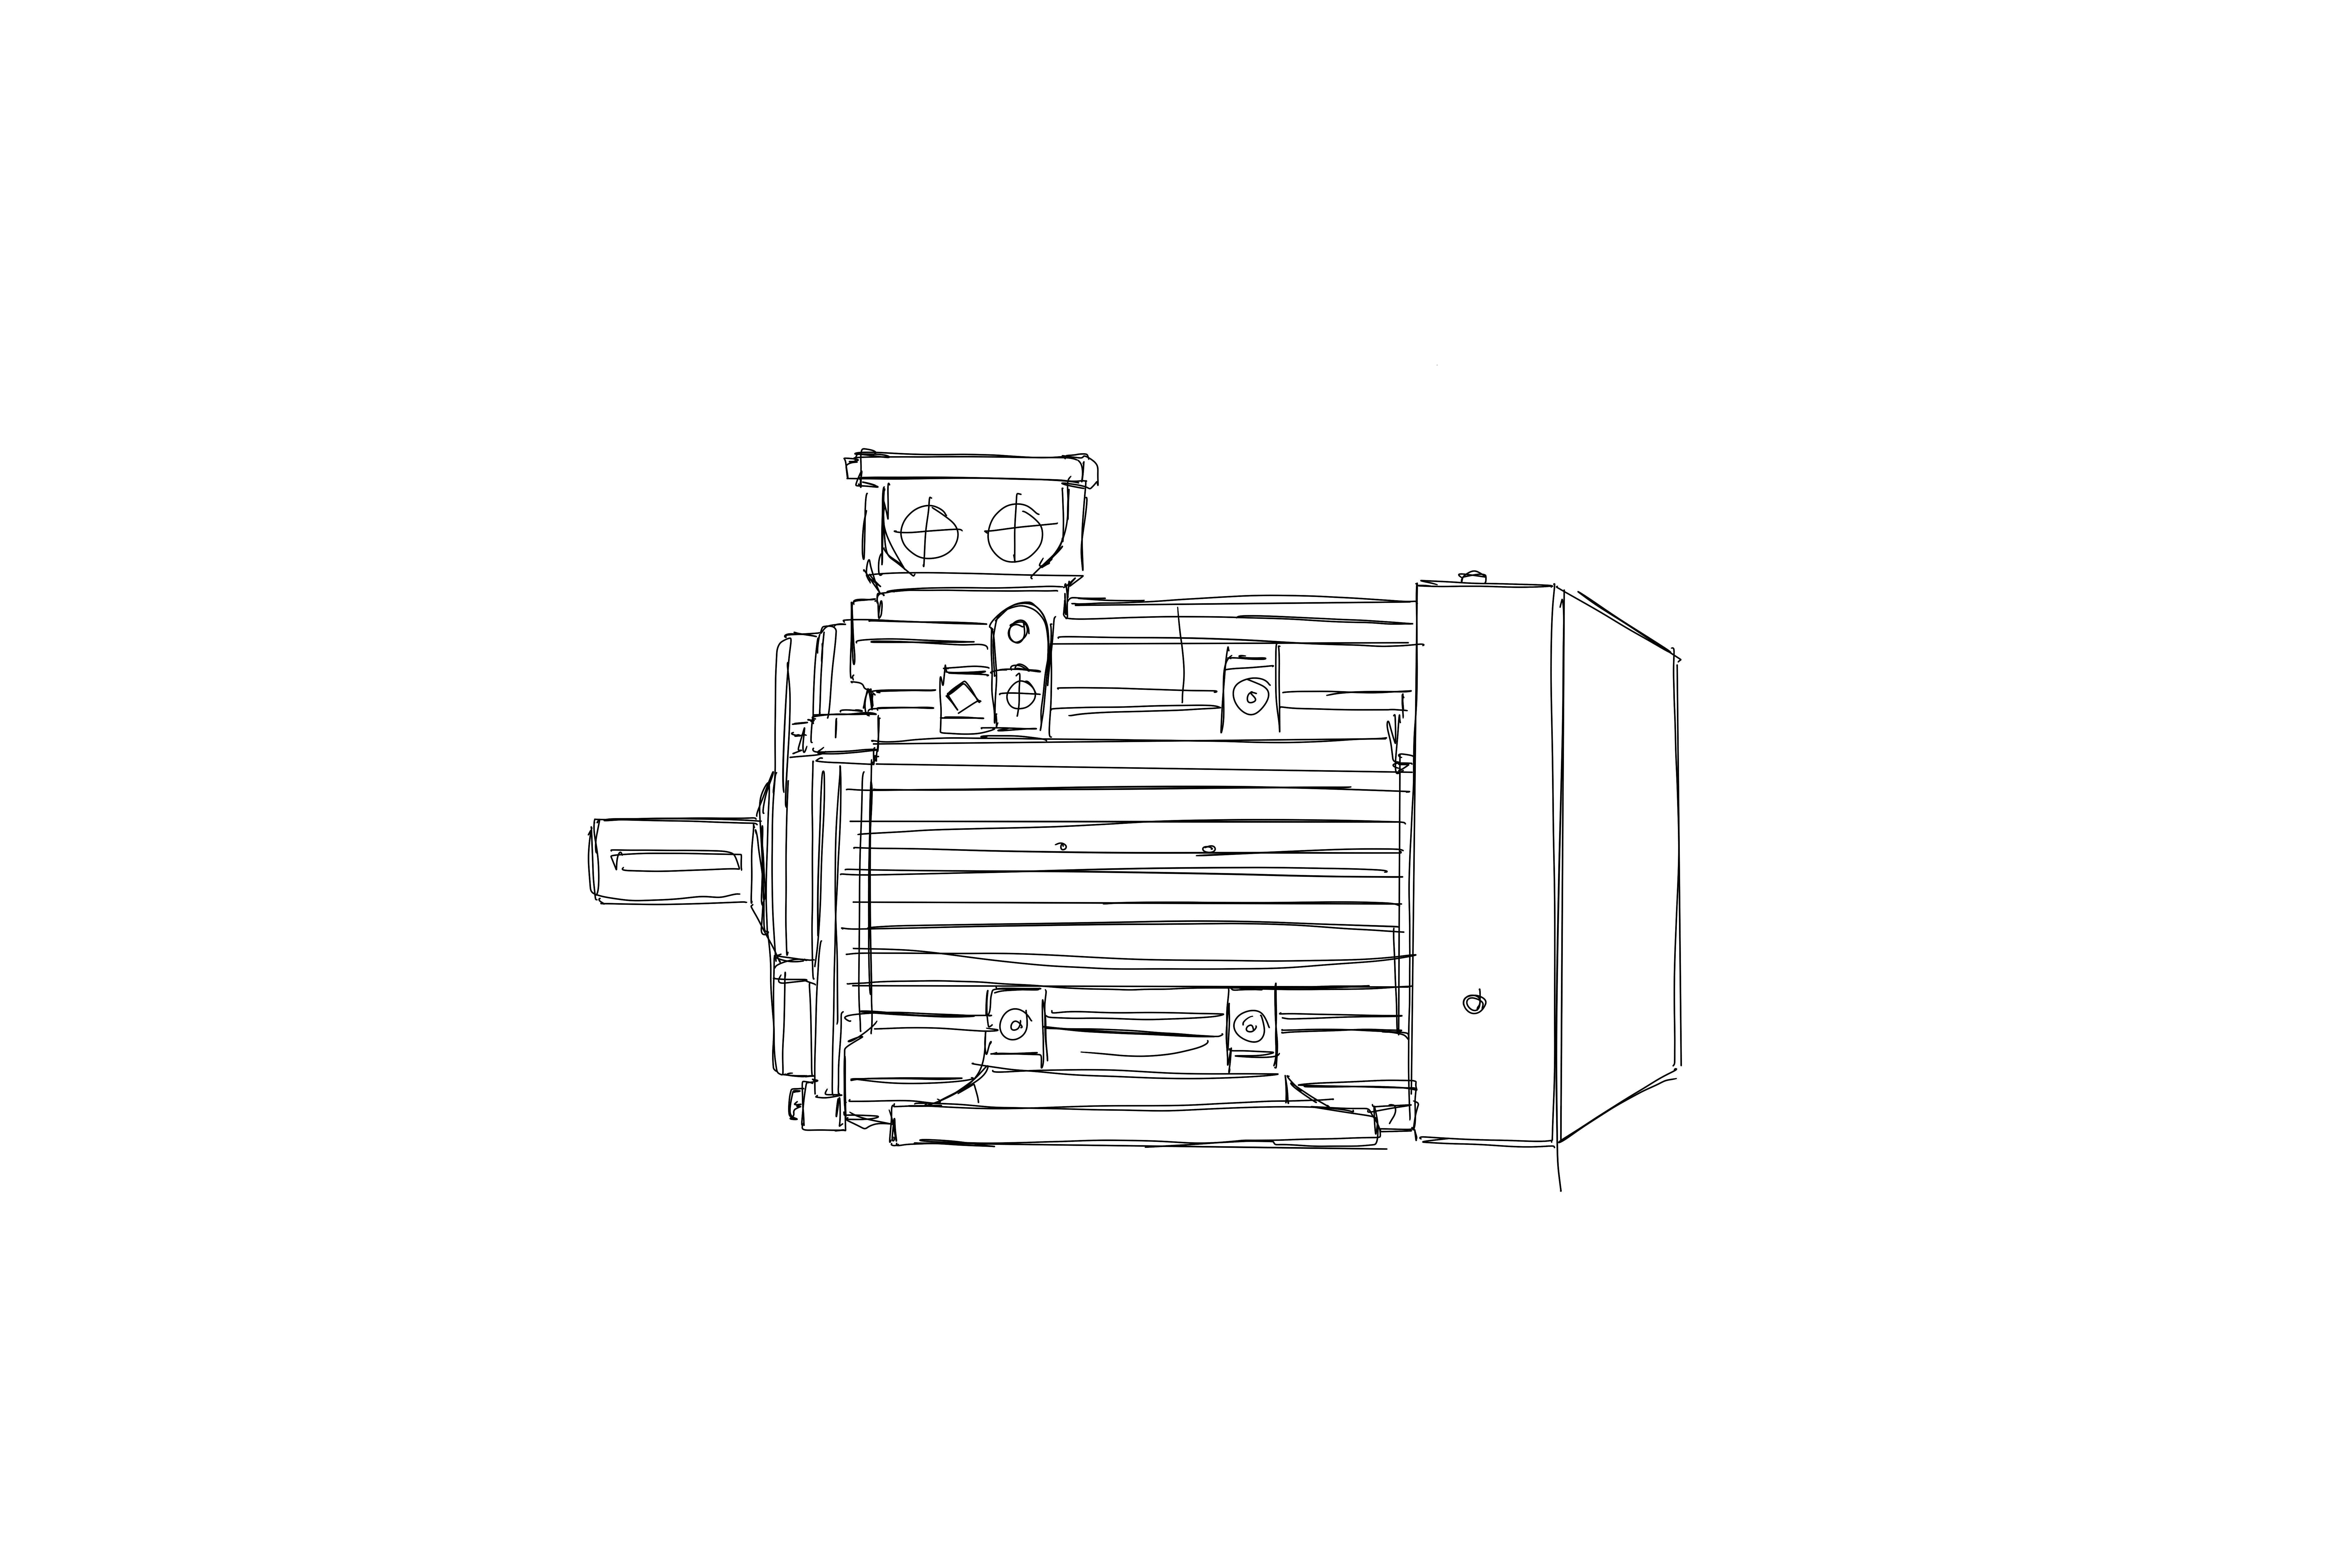 Einphasen-Wechselstrommotor ABS 90 S 4 /HT